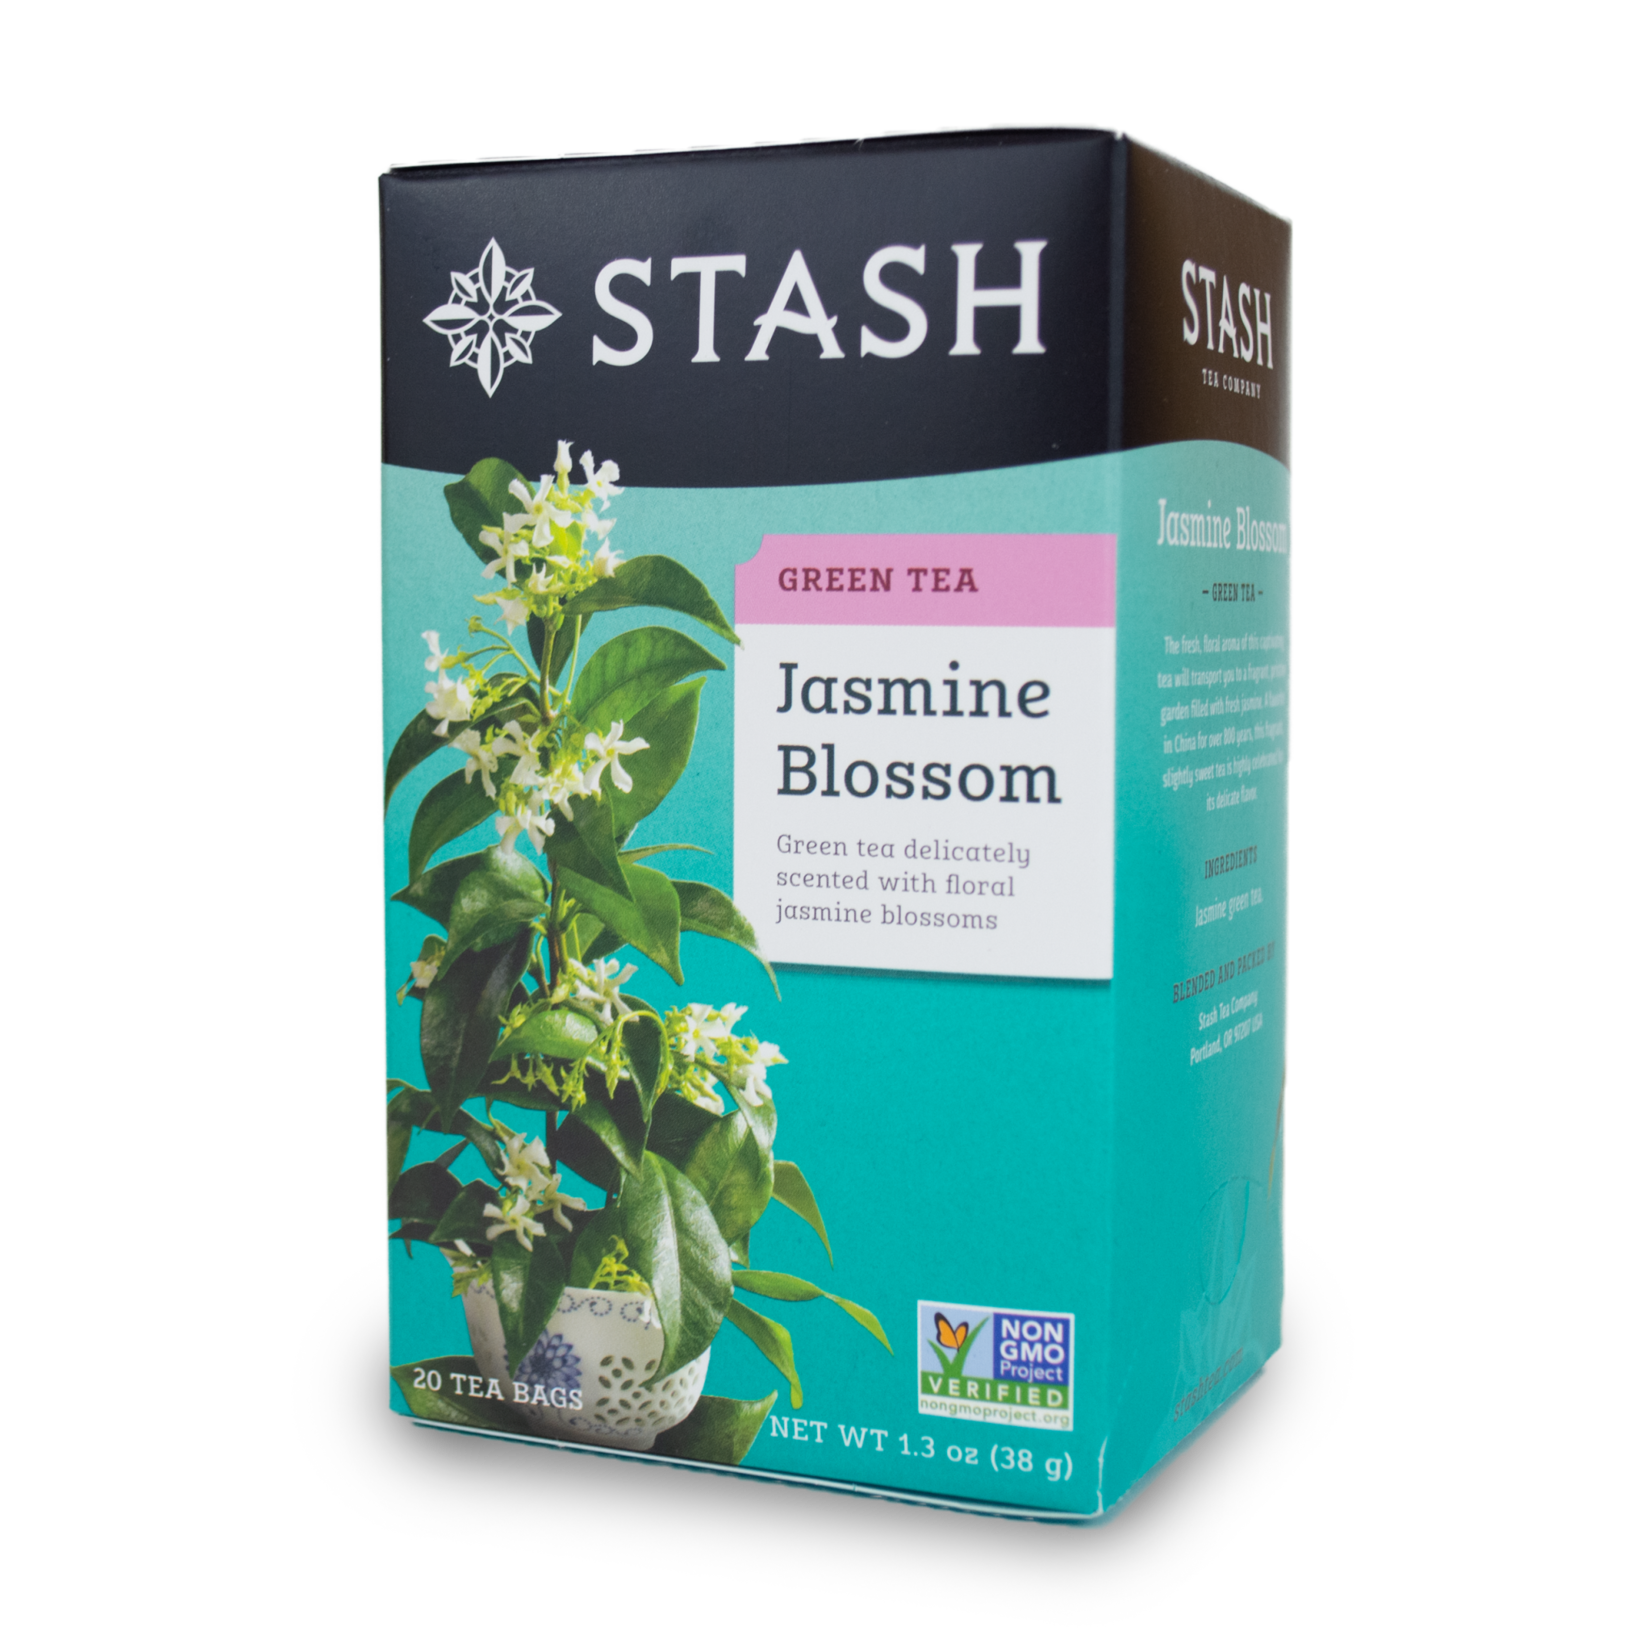 Stash Stash Jasmine Blossom Tea 38g